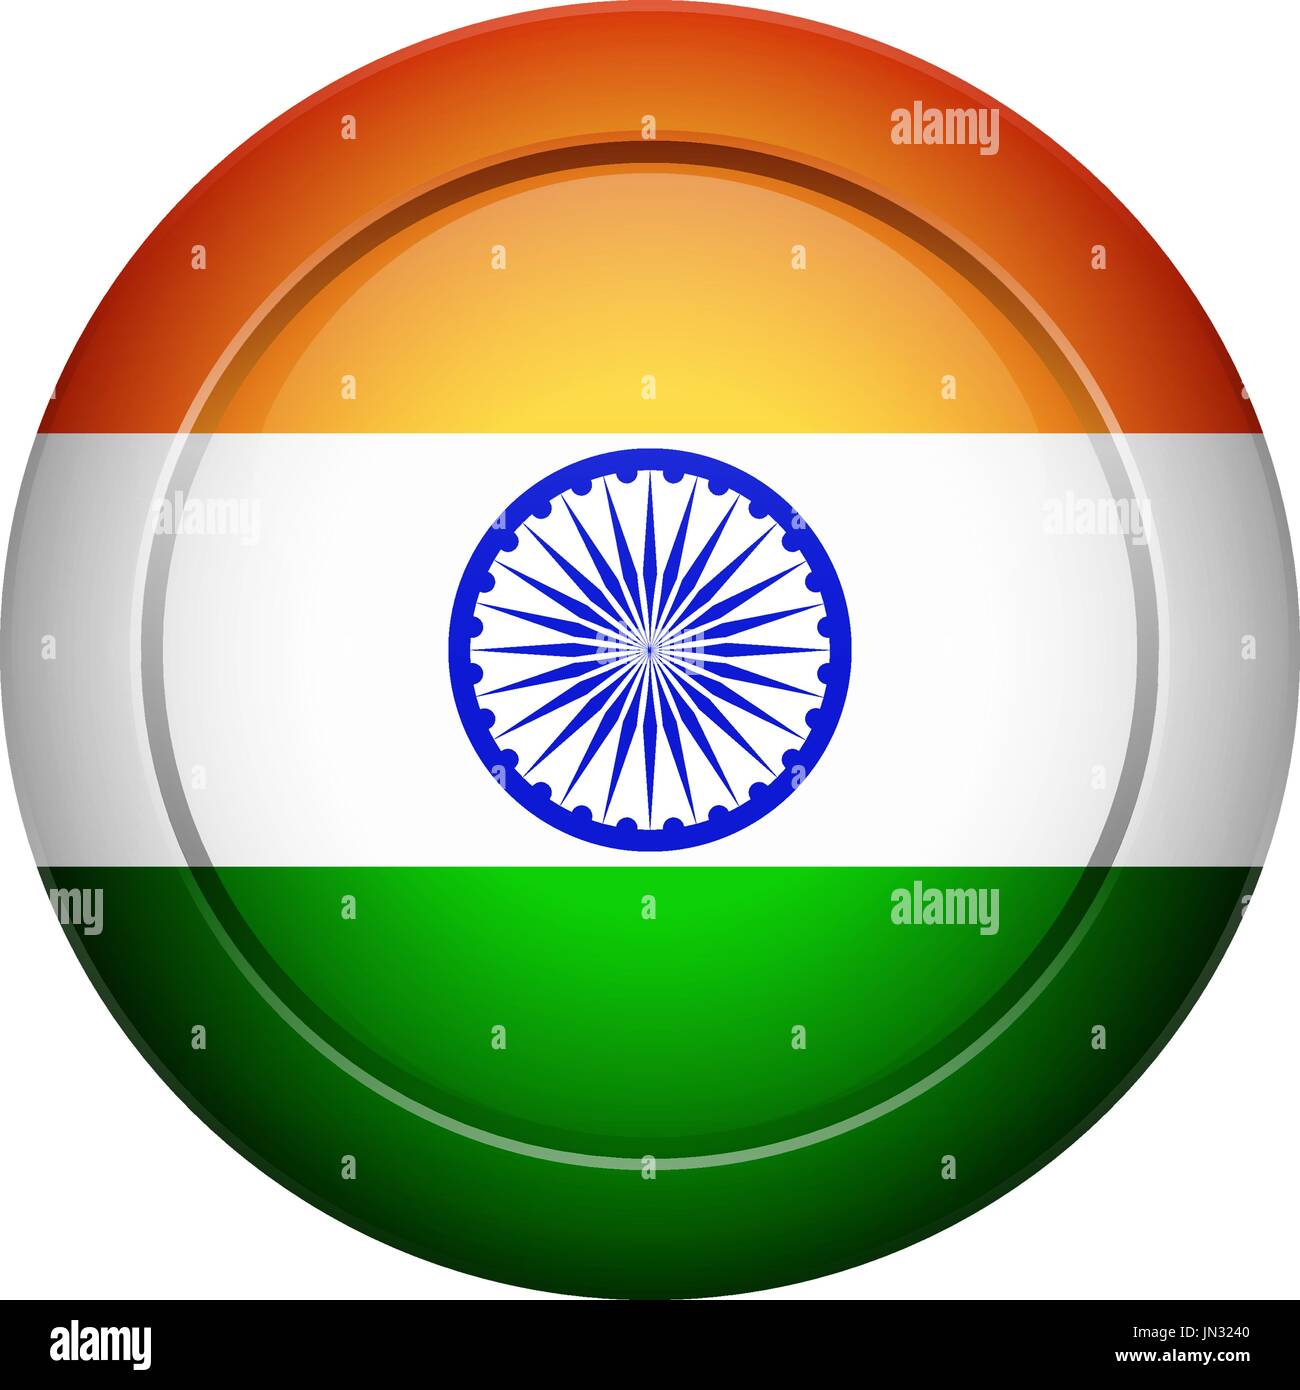 Flagge entwerfen. Indische Flagge auf den runden Knopf. Isolierte Vorlage für Ihre Entwürfe. Vektor-Illustration. Stock Vektor